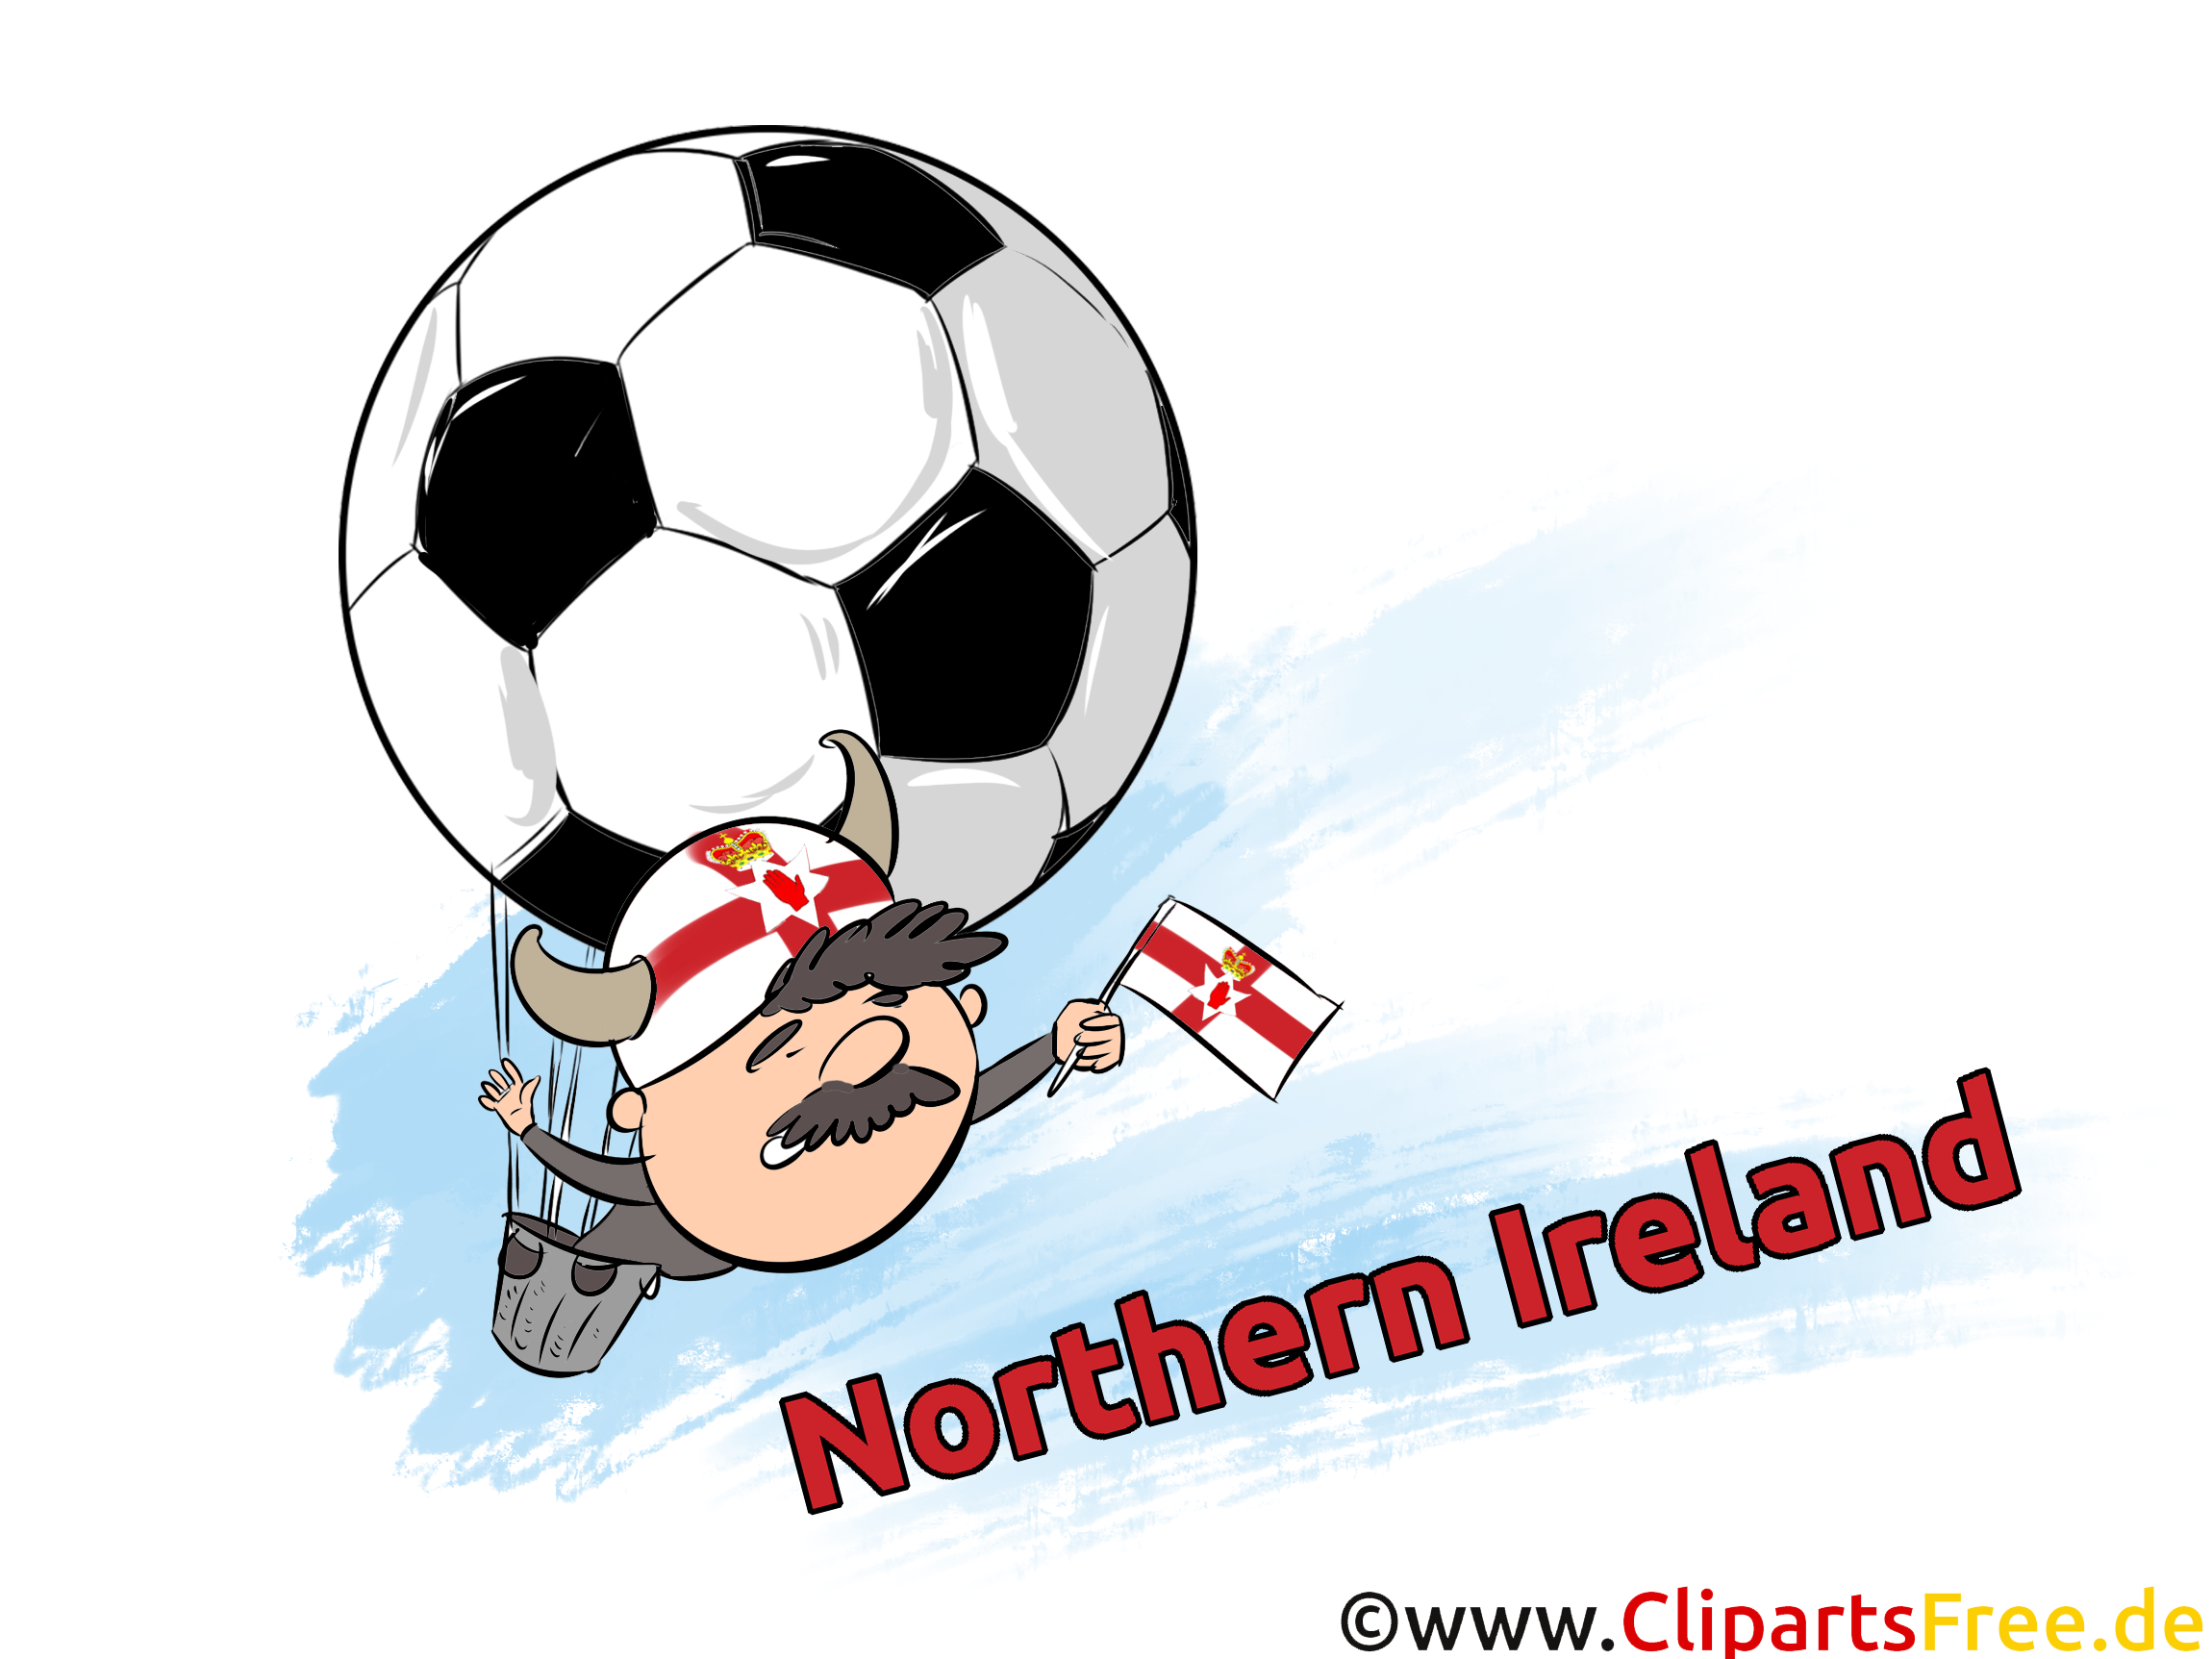 Irlande du Nord Joueur Football gratuit Image